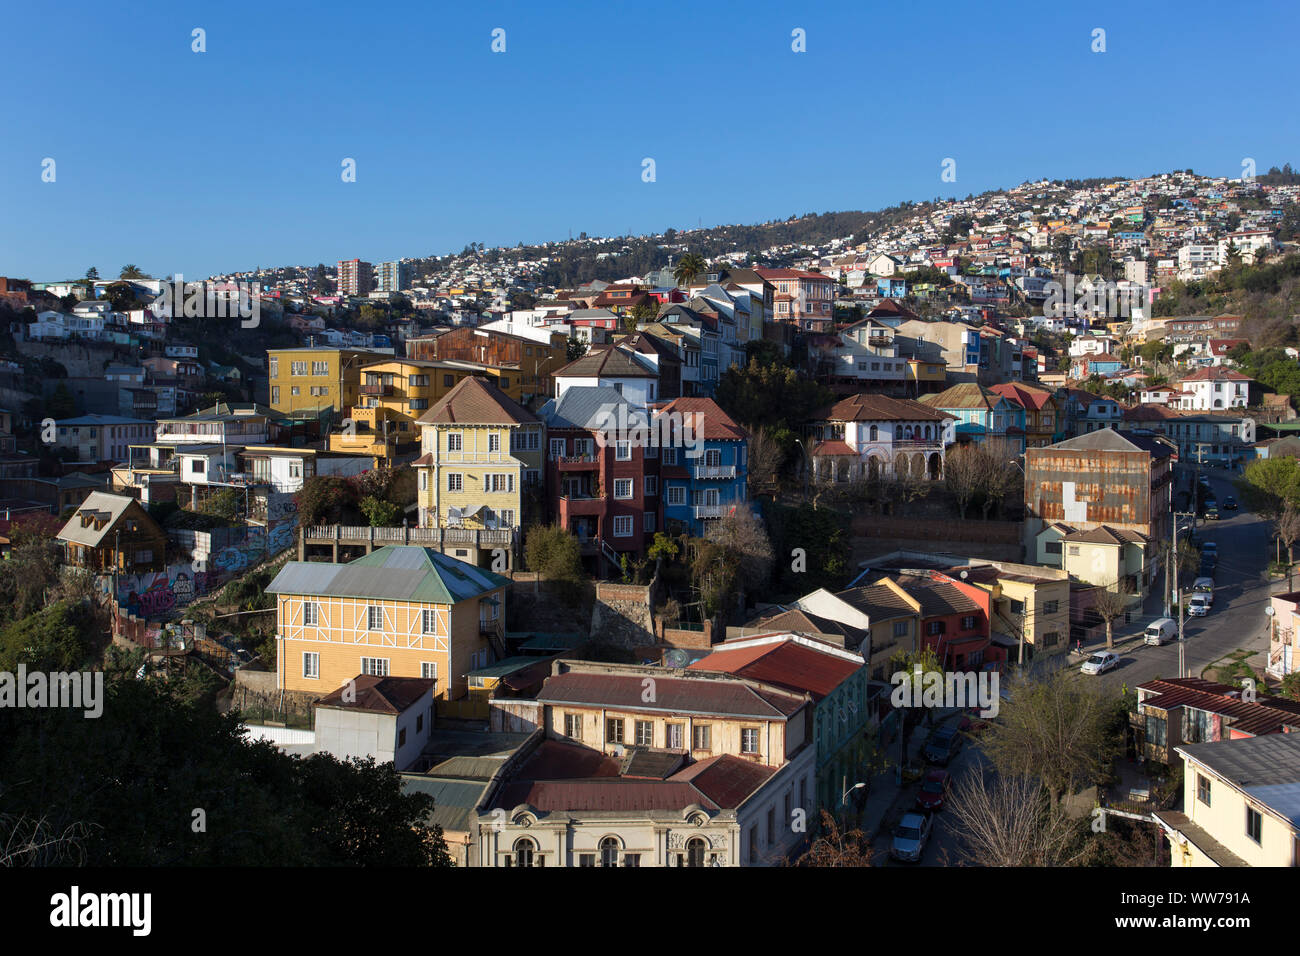 Valparaiso, Chili - Août 08, 2019 : avis de maisons colorées dans l'une des collines à Valparaiso Banque D'Images